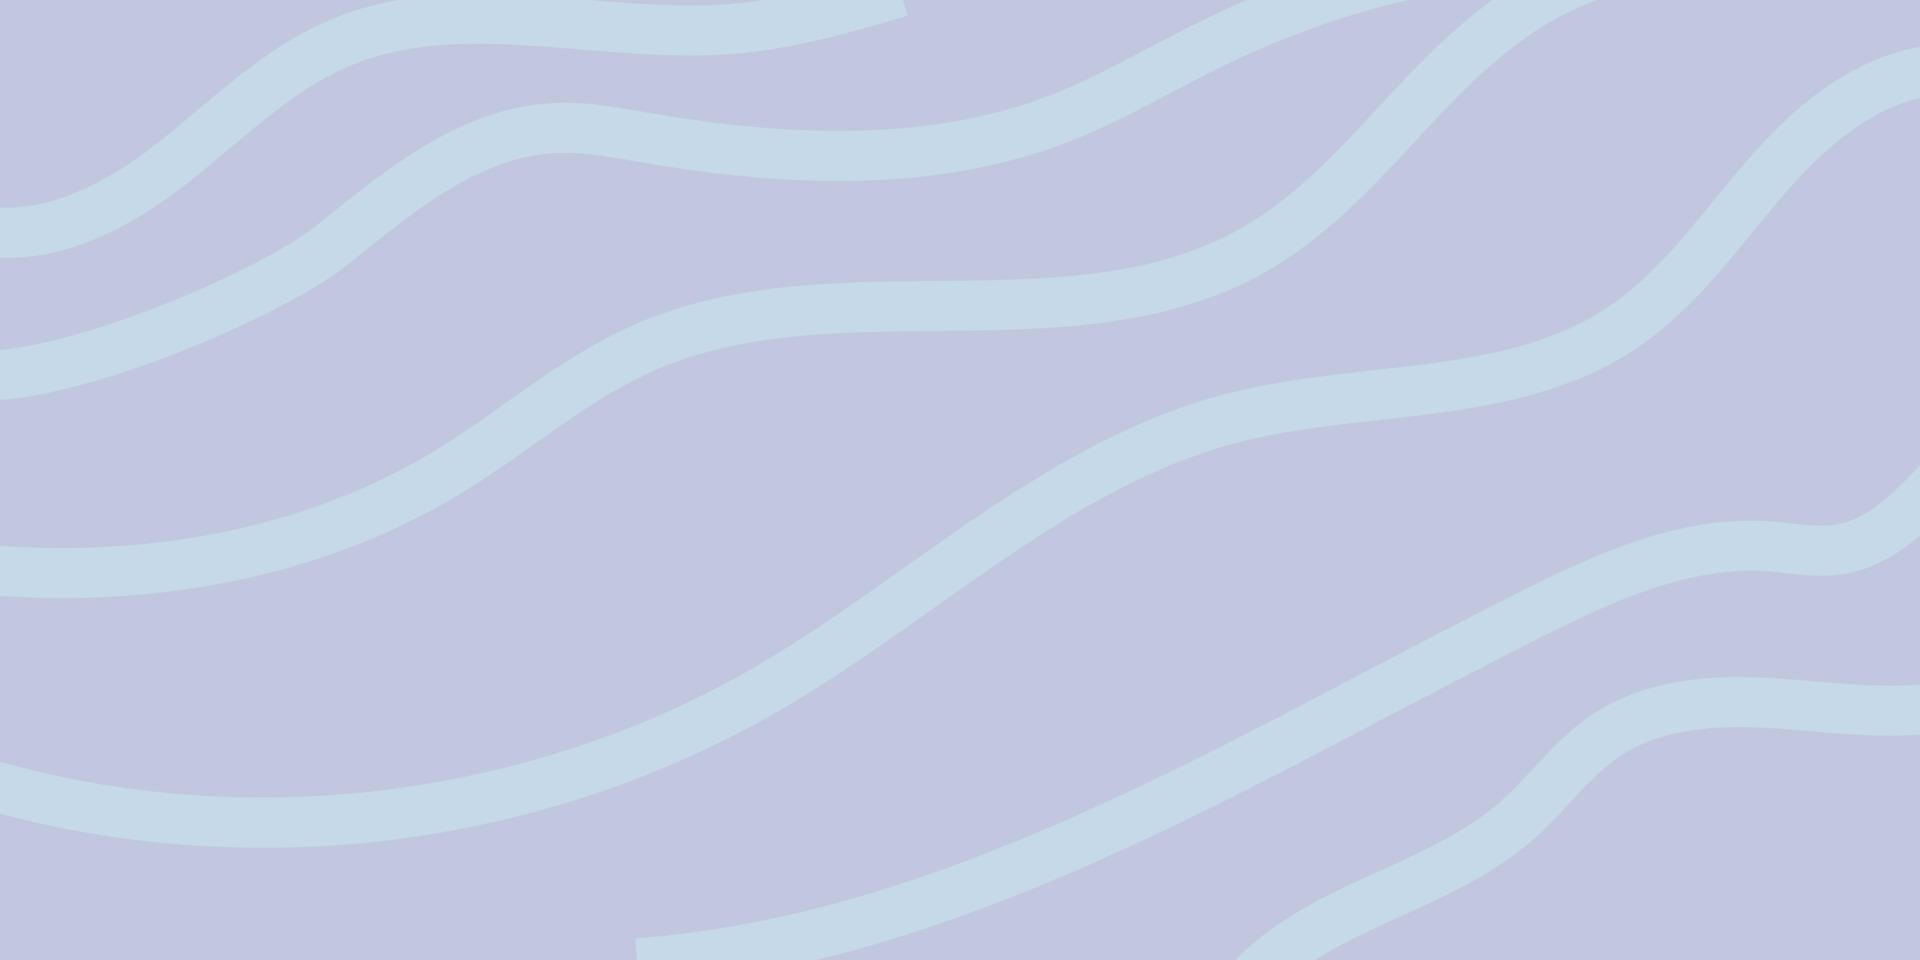 abstrakt Hintergrund mit Wasser Textur. Blau Farbe. Vektor Illustration. das Wellen.